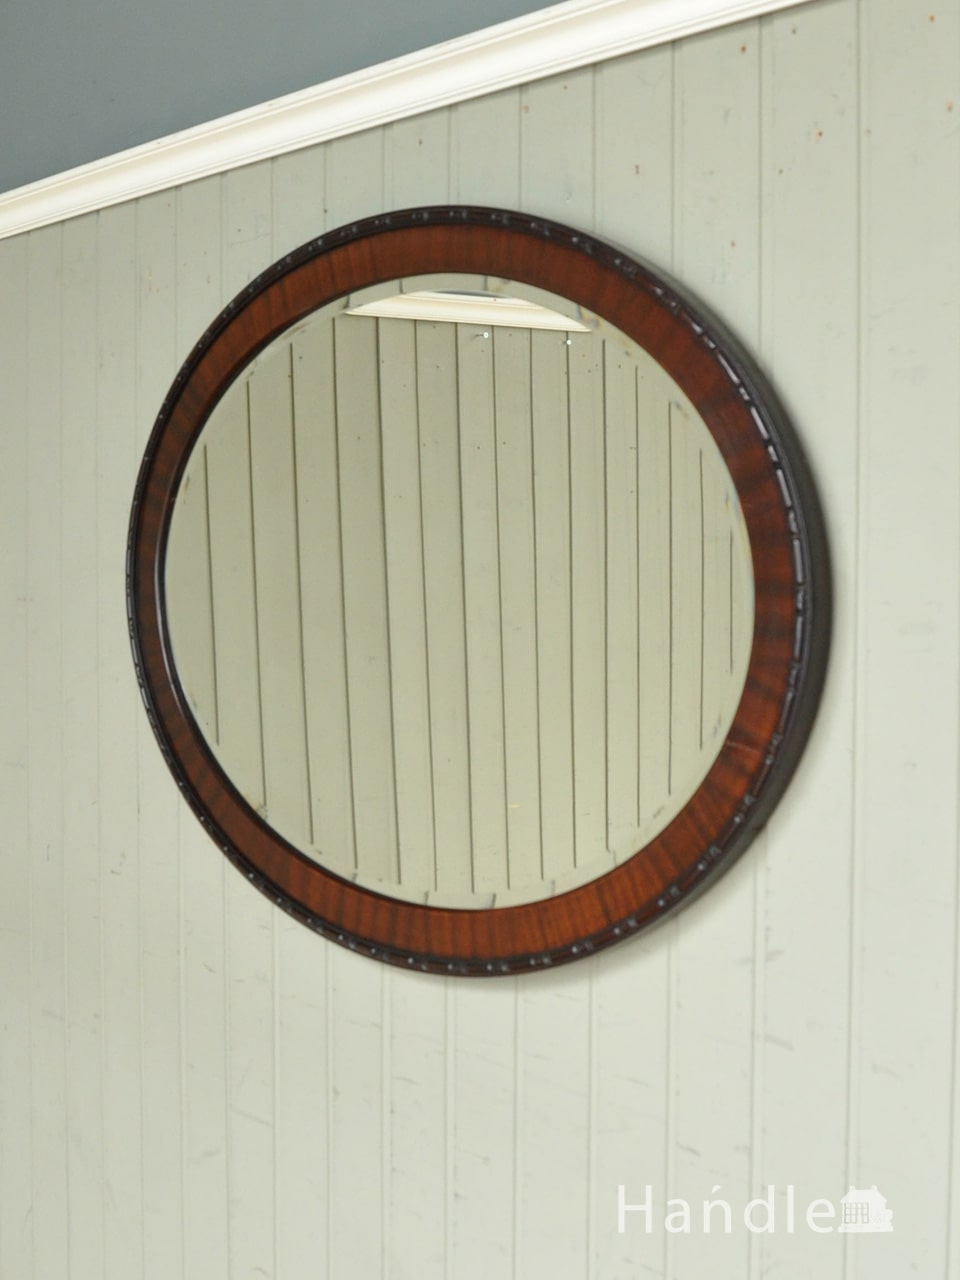 英国のおしゃれな鏡、オーバル型の木製フレーム付きのアンティークミラー